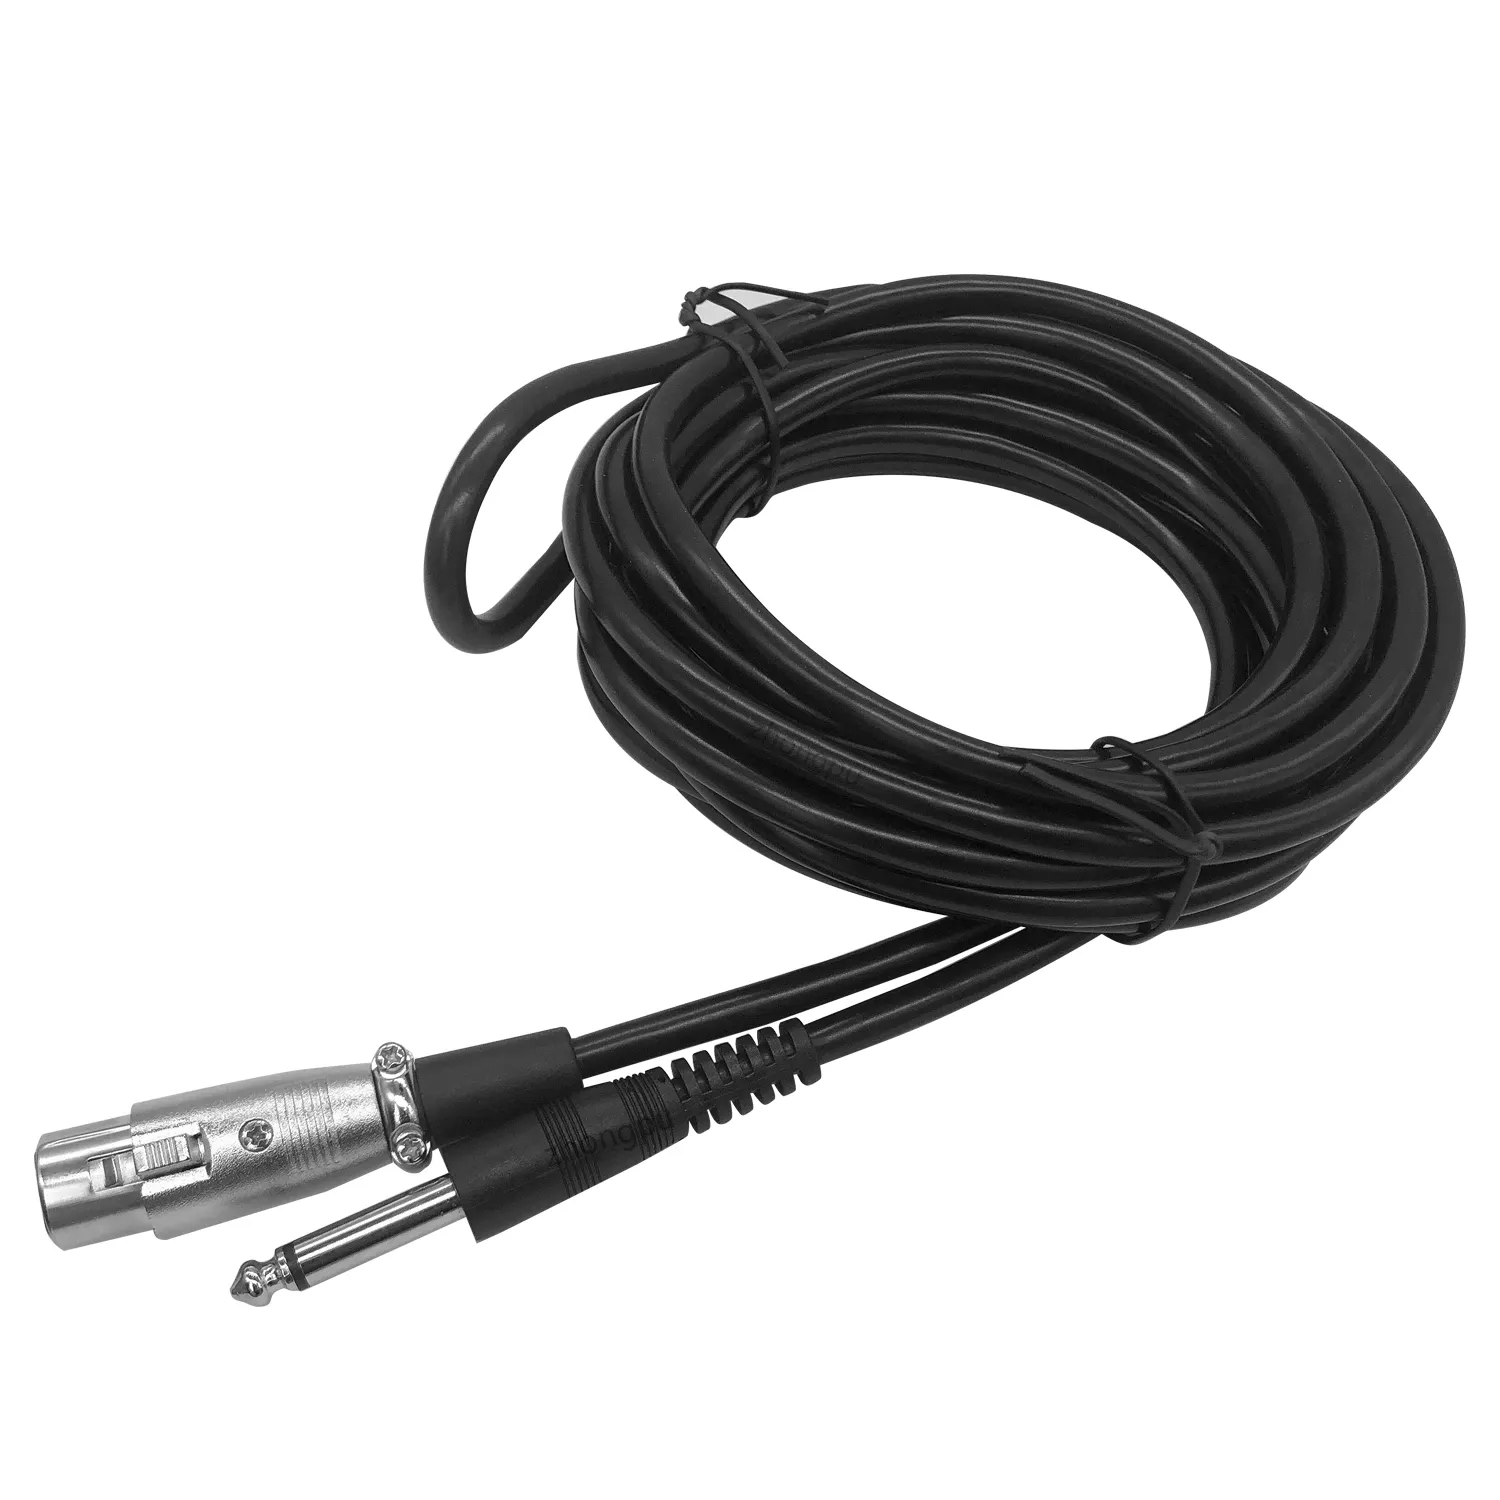 XLR femelle vers 1/4 (6,35 mm) TS Mono Jack Câble de microphone asymétrique Cordon micro pour microphone dynamique - 10 pieds / 3 mètres